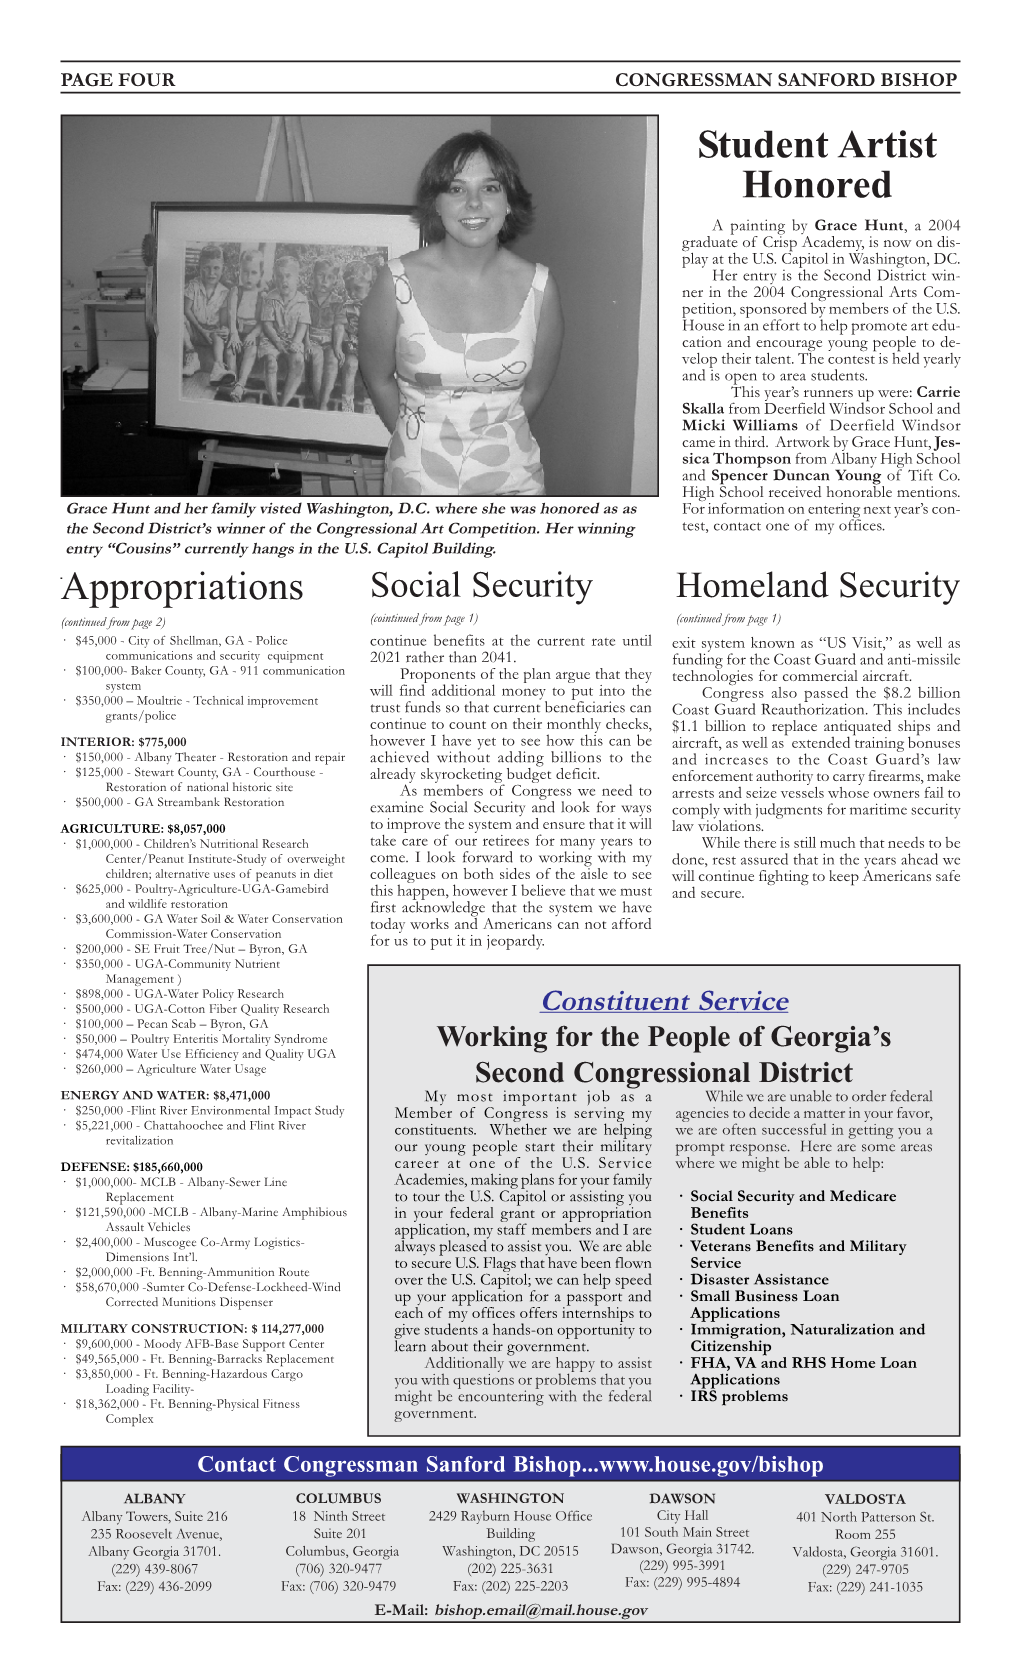 Newsletter 2004